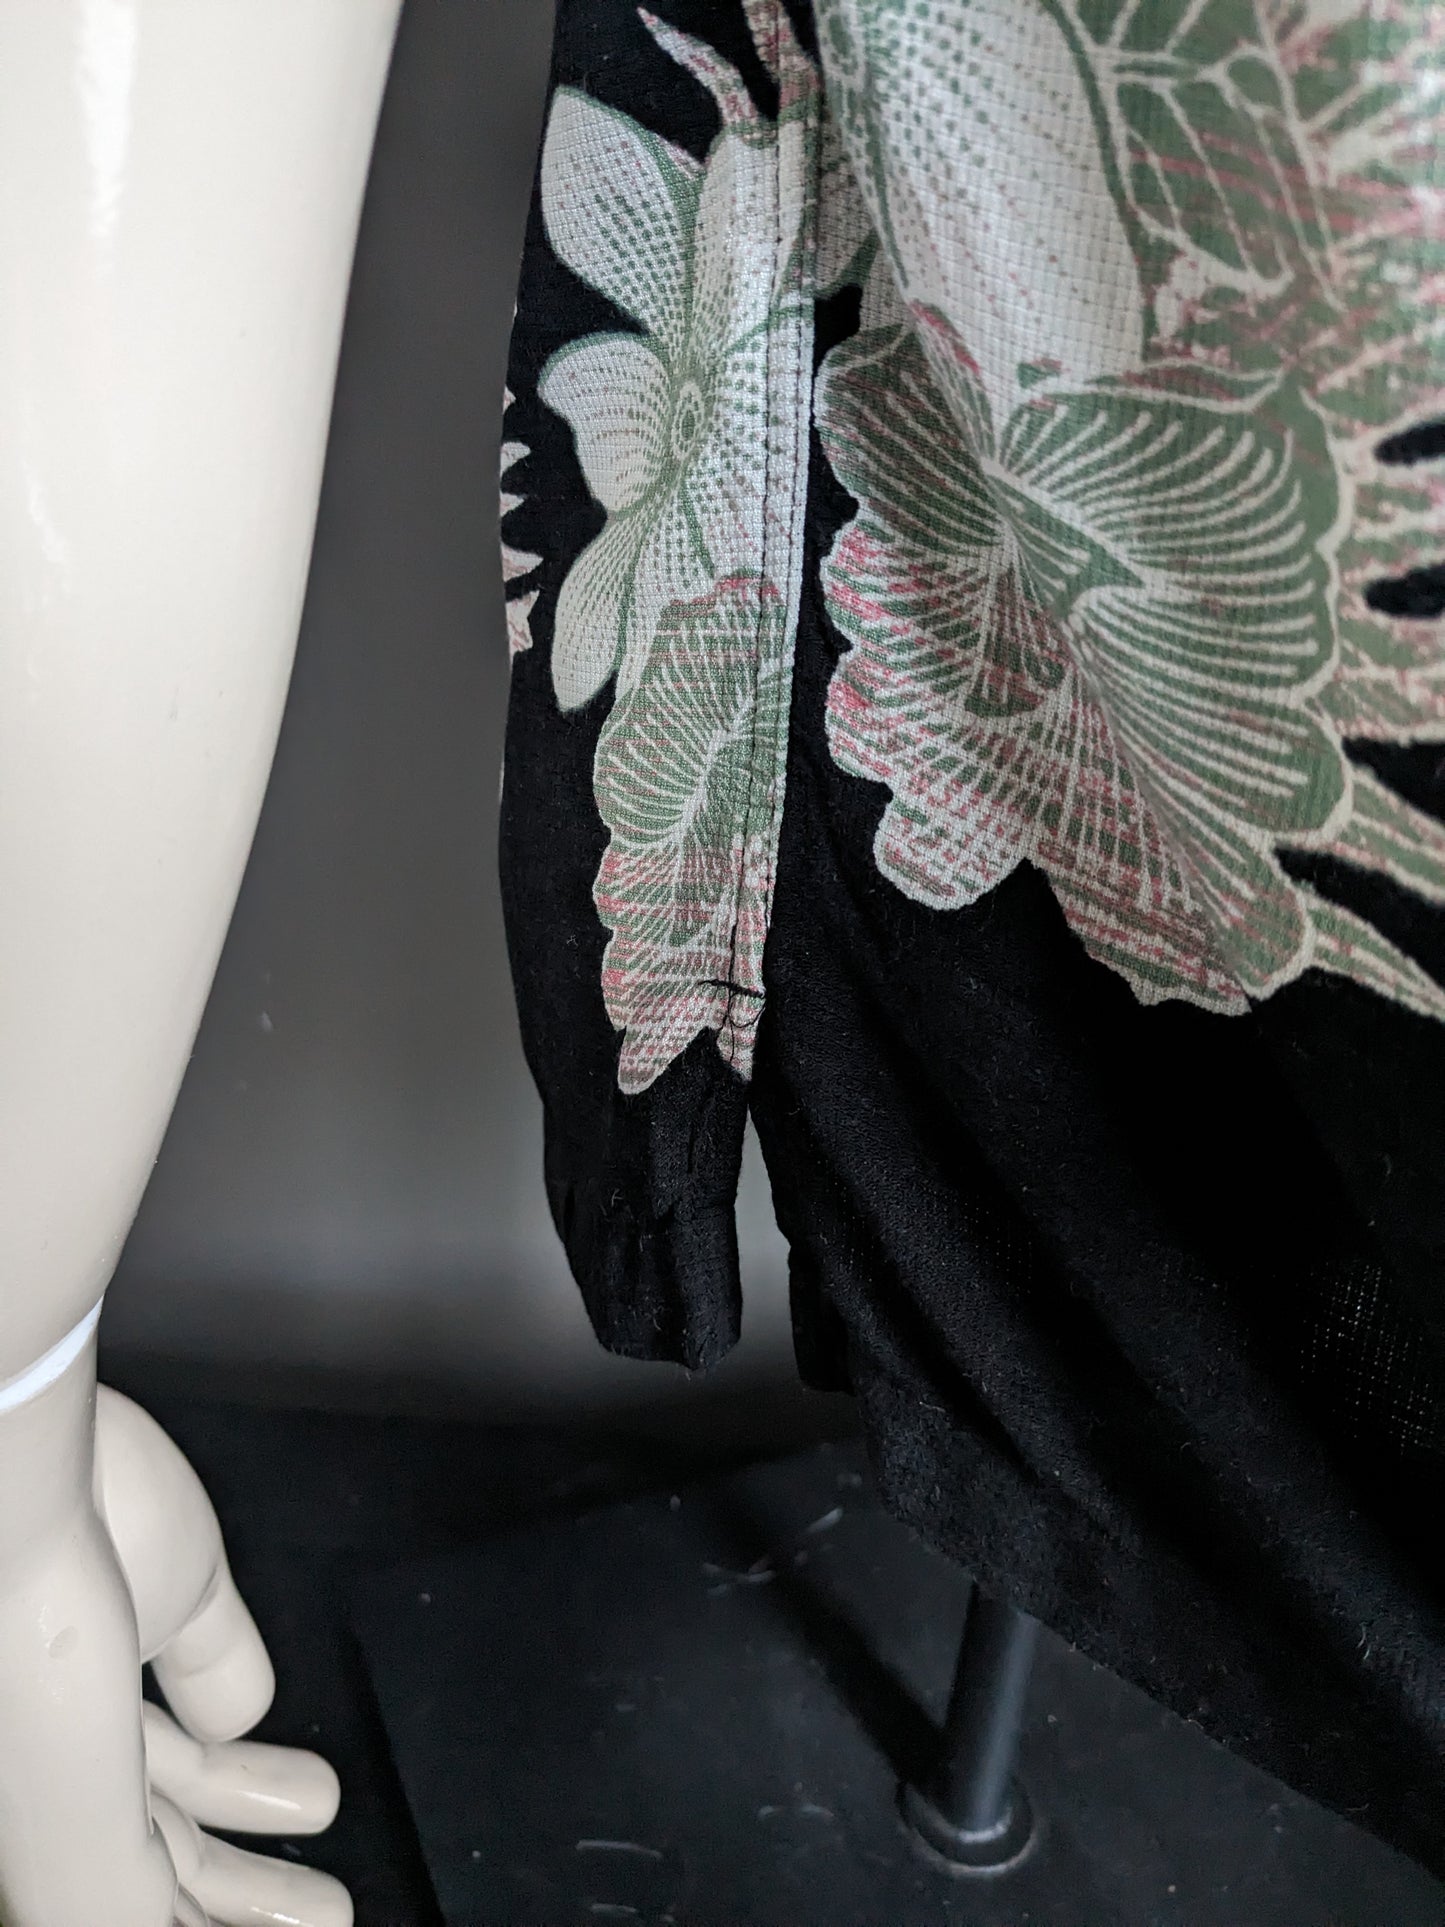 Caribbean Original Silk Hawaii Chemise courte. Impression florale beige rouge vert noir. Taille M. 55% de soie.